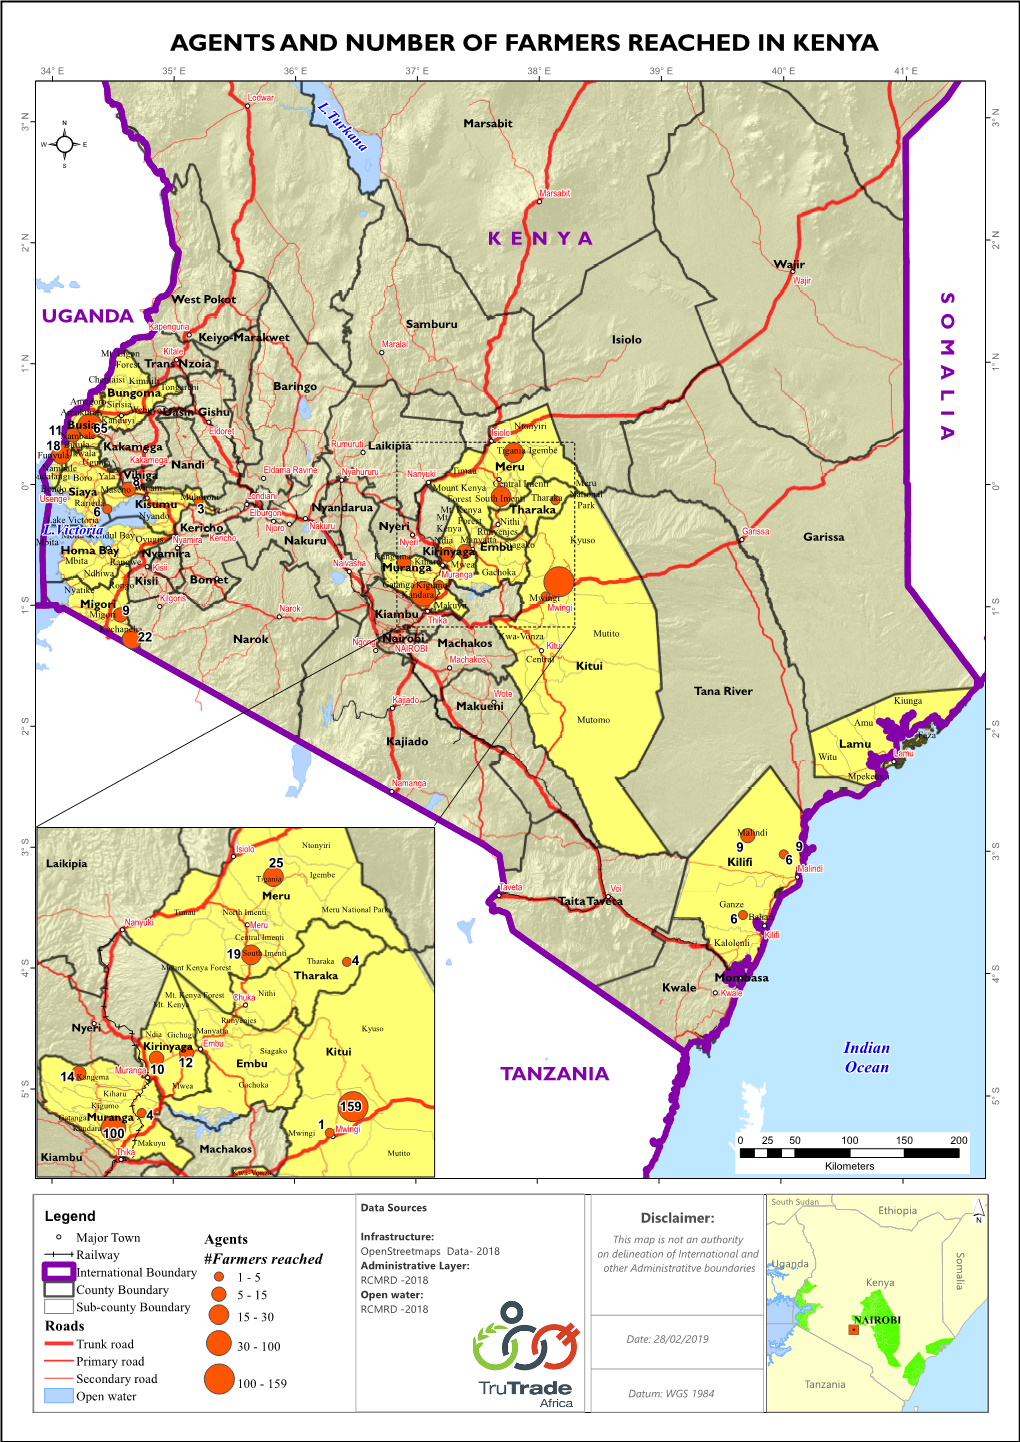 Agents and Number of Farmers Reached in Kenya 34° E 35° E 36° E 37° E 38° E 39° E 40° E 41° E